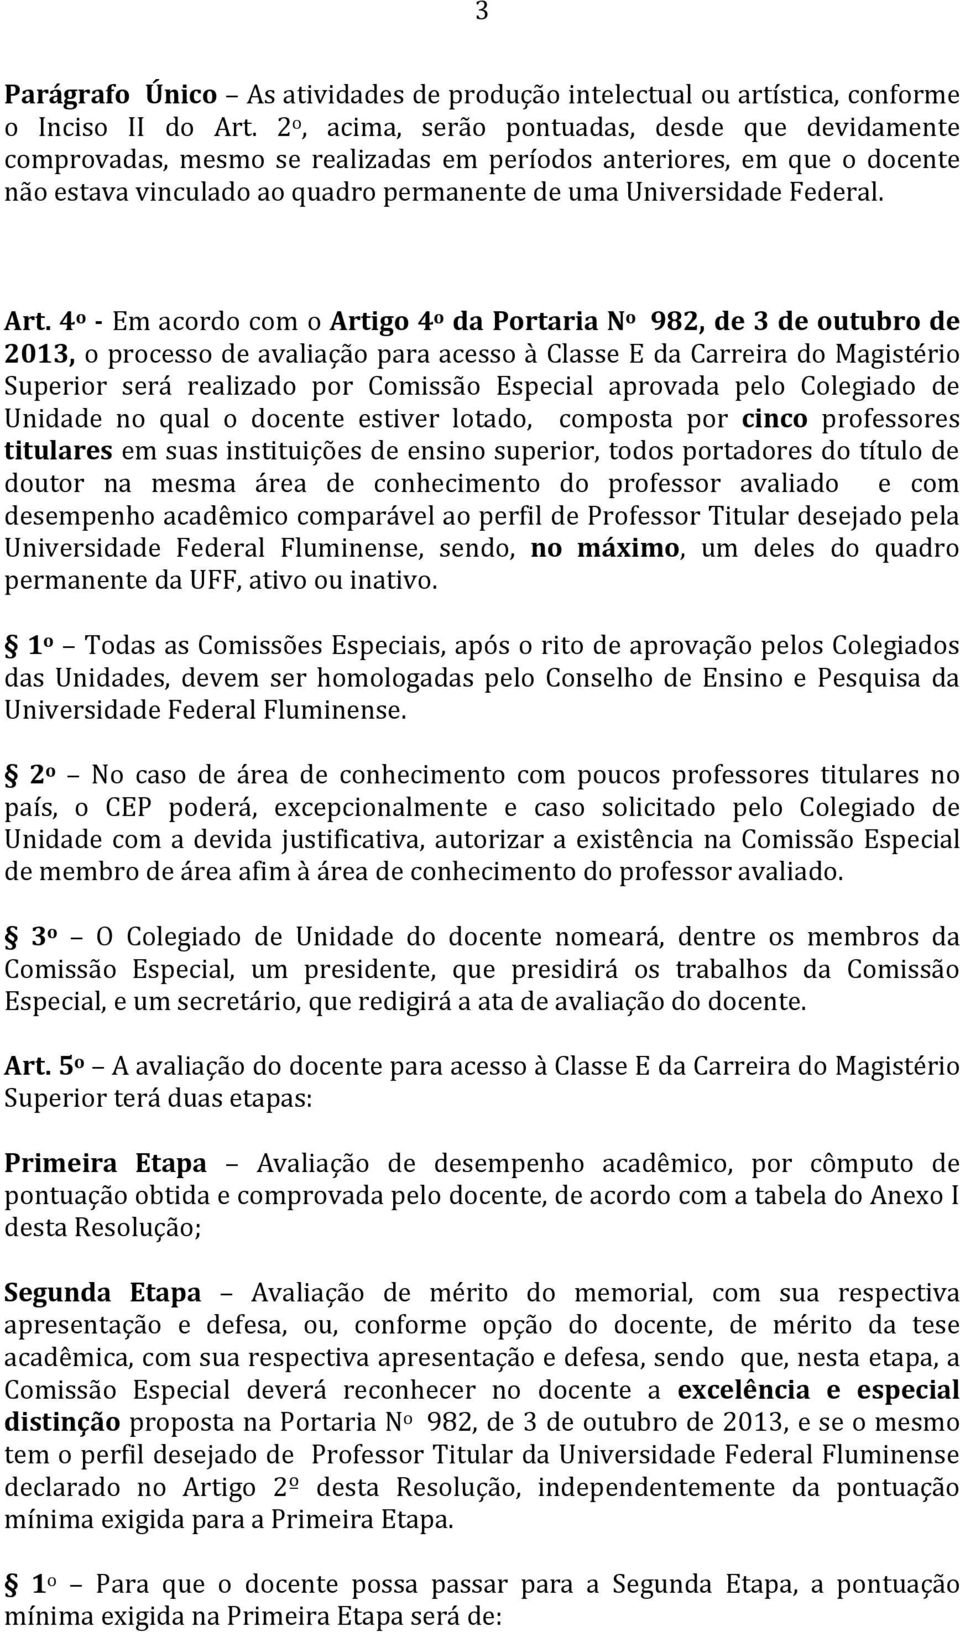 4 o - Em acordo com o Artigo 4 o da Portaria N o 982, de 3 de outubro de 2013, o processo de avaliac a o para acesso a Classe E da Carreira do Magiste rio Superior sera realizado por Comissa o